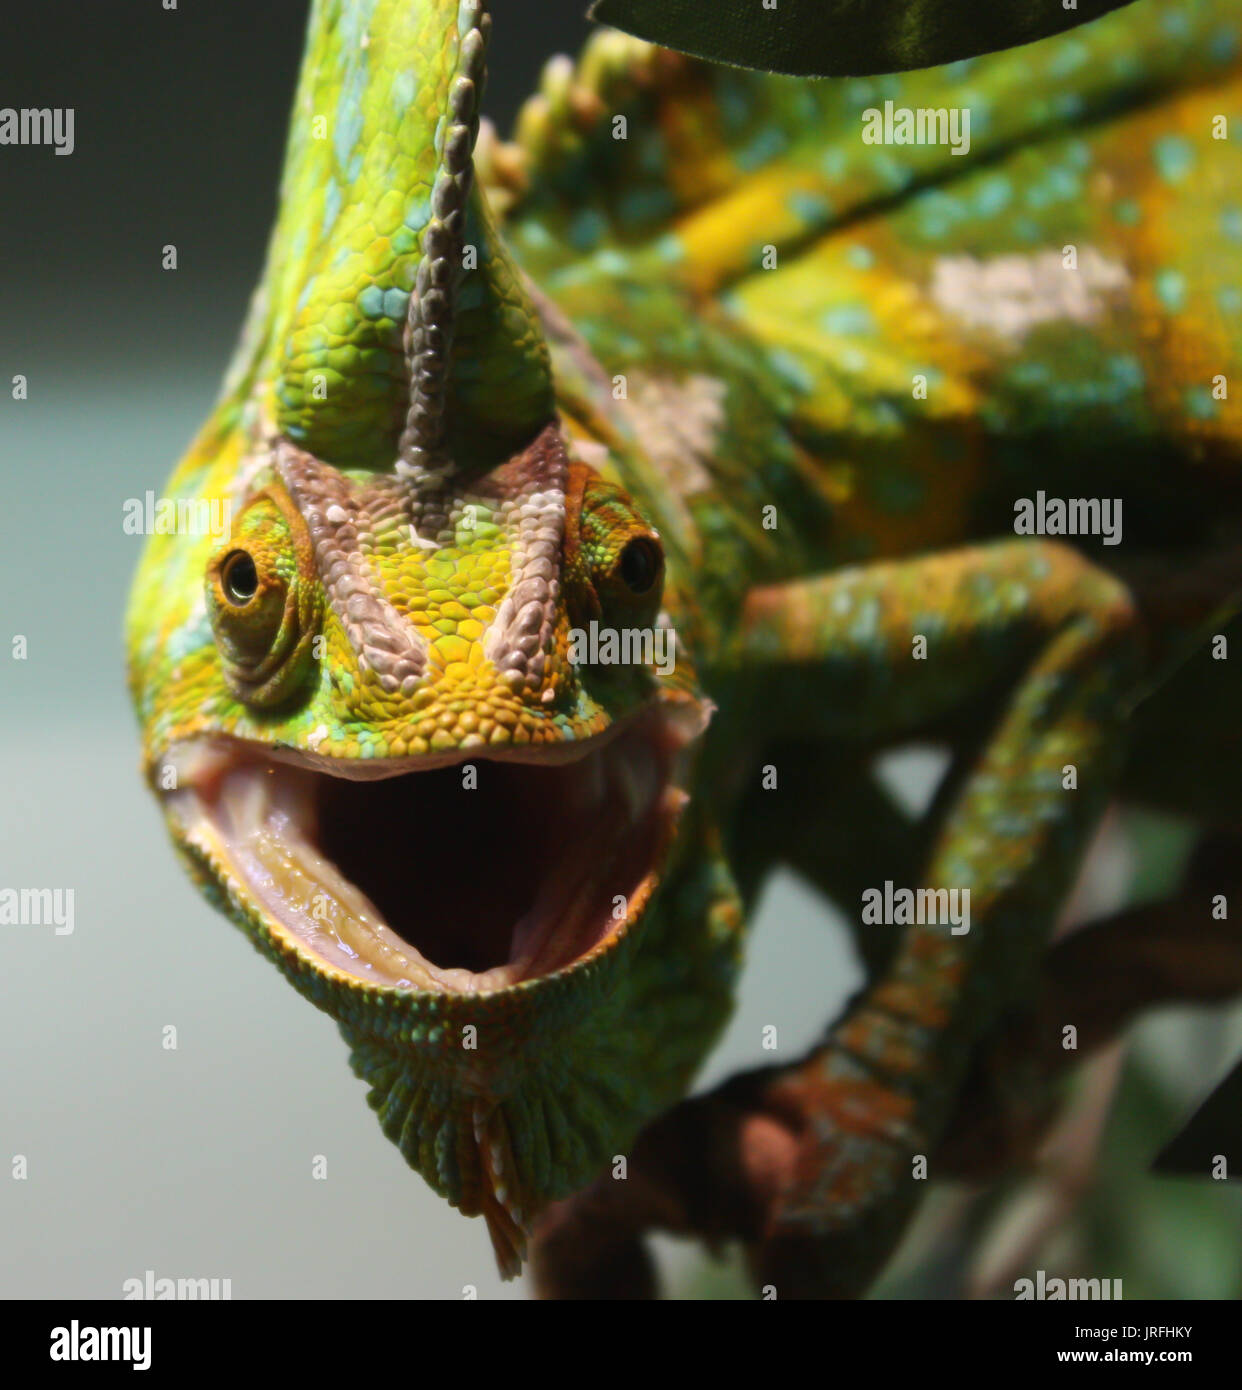 Caméléon Vert lézard reptile avec la bouche ouverte looking at camera Banque D'Images